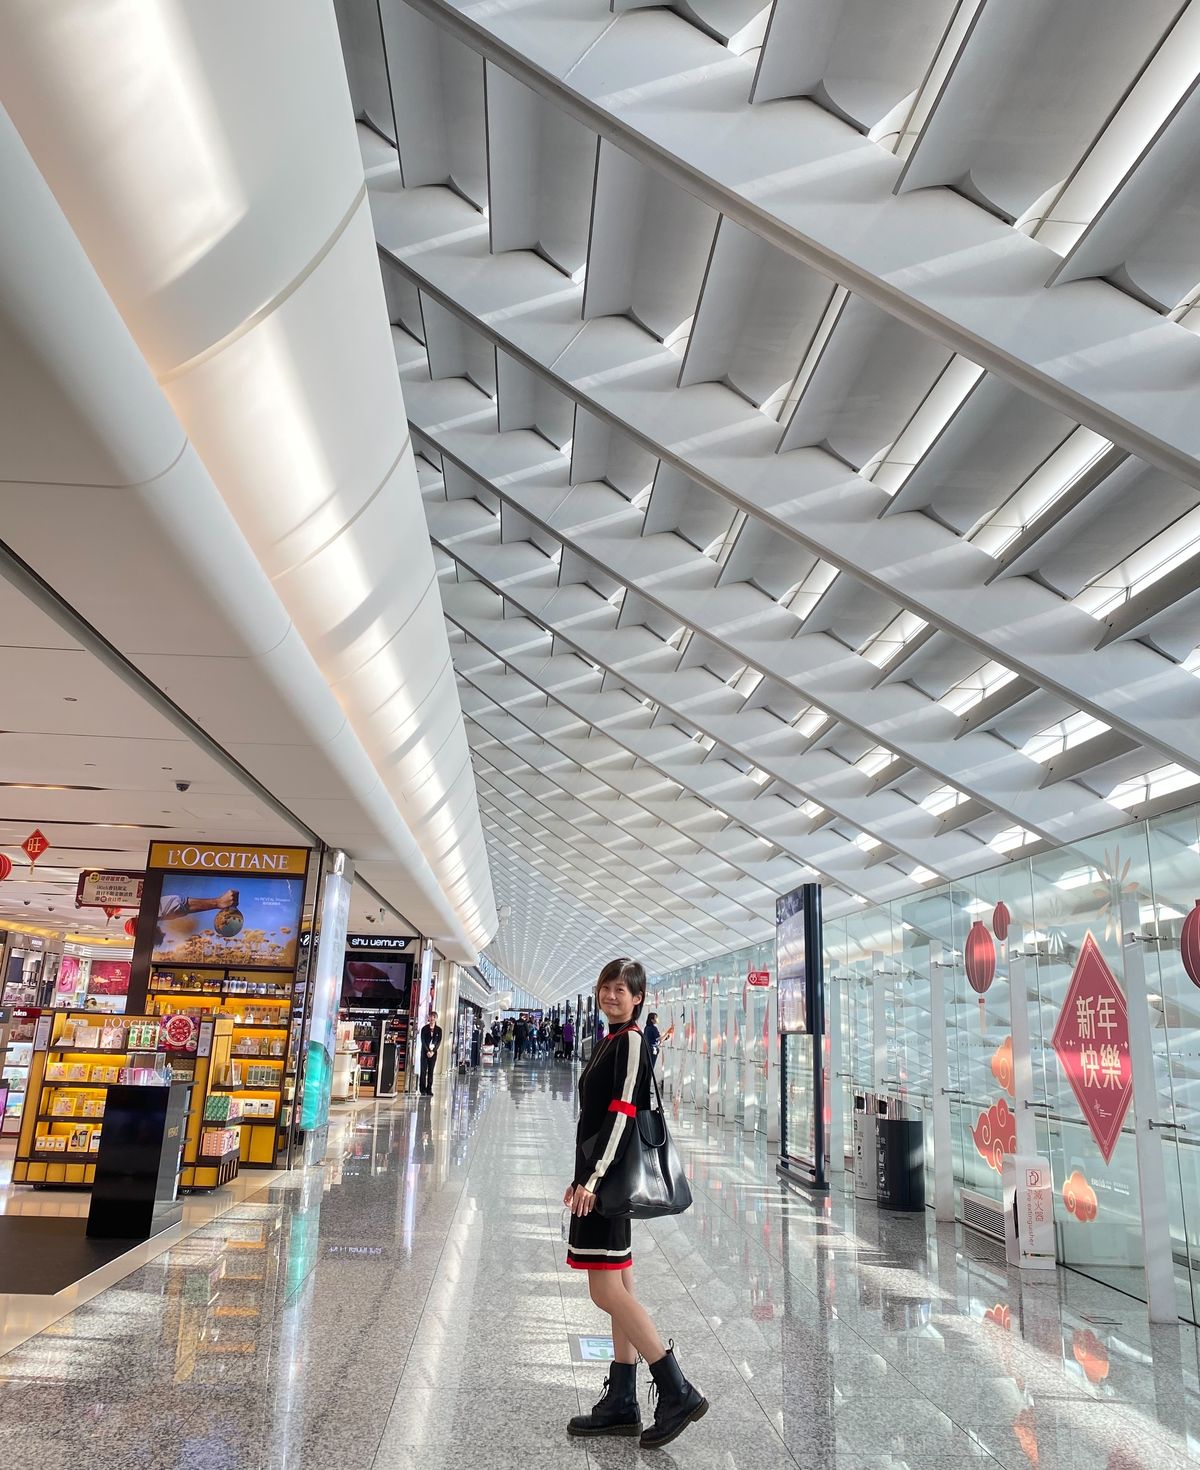 昇恆昌免稅商店特別為旅人盤點桃園國際機場的十大拍照打卡點